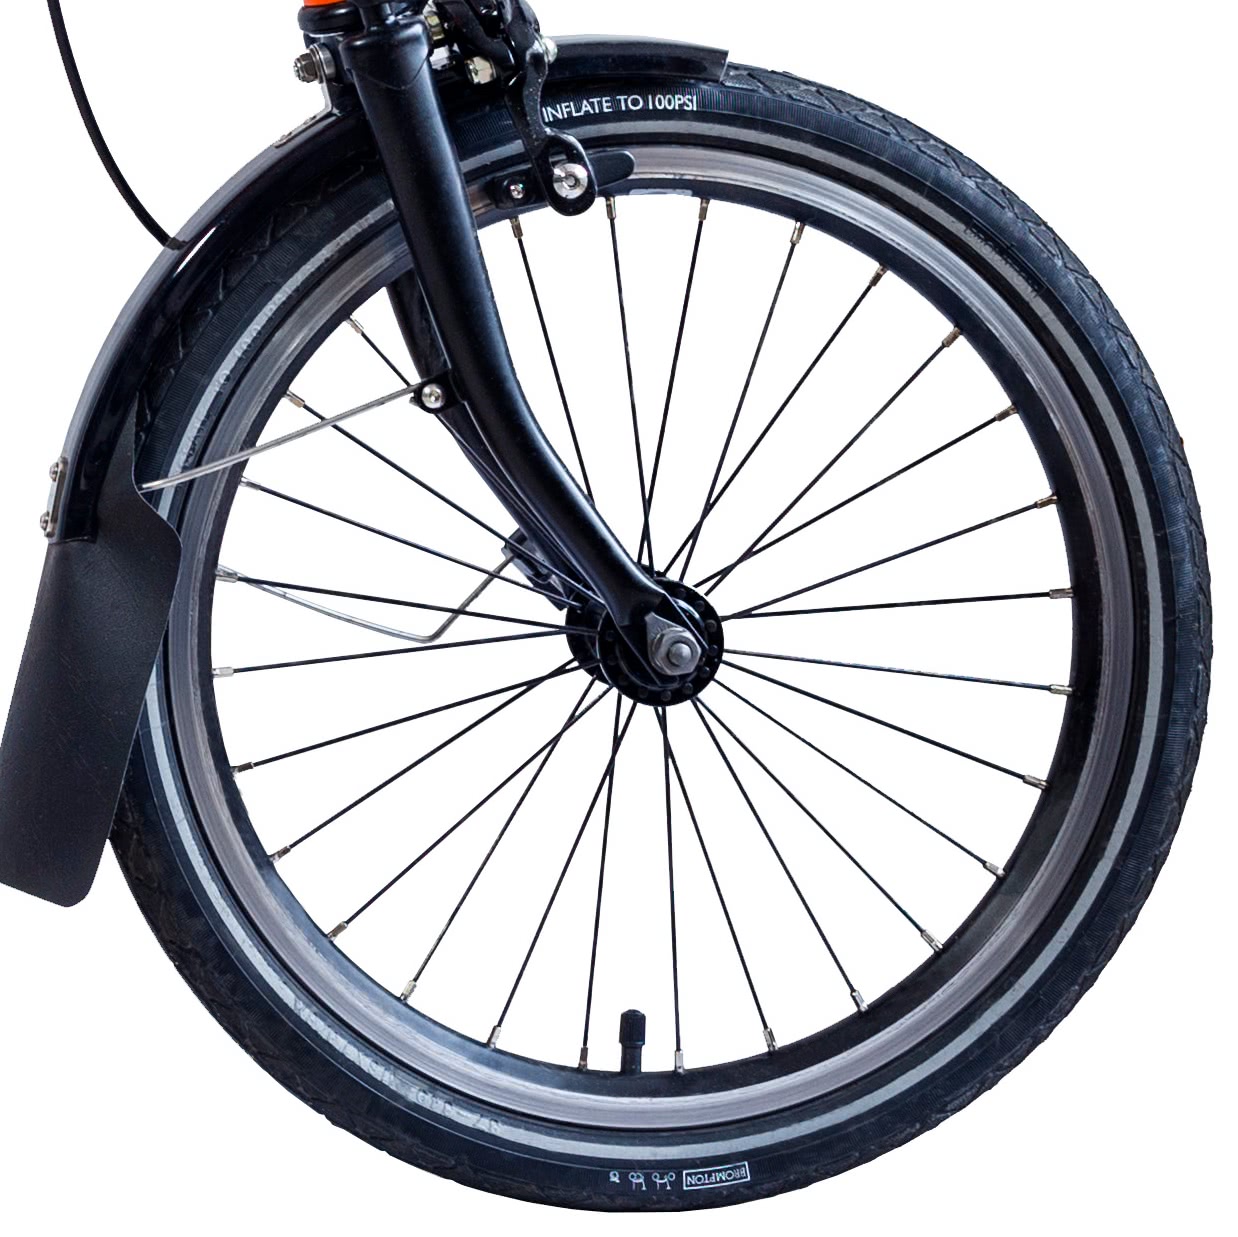 16in bike wheel